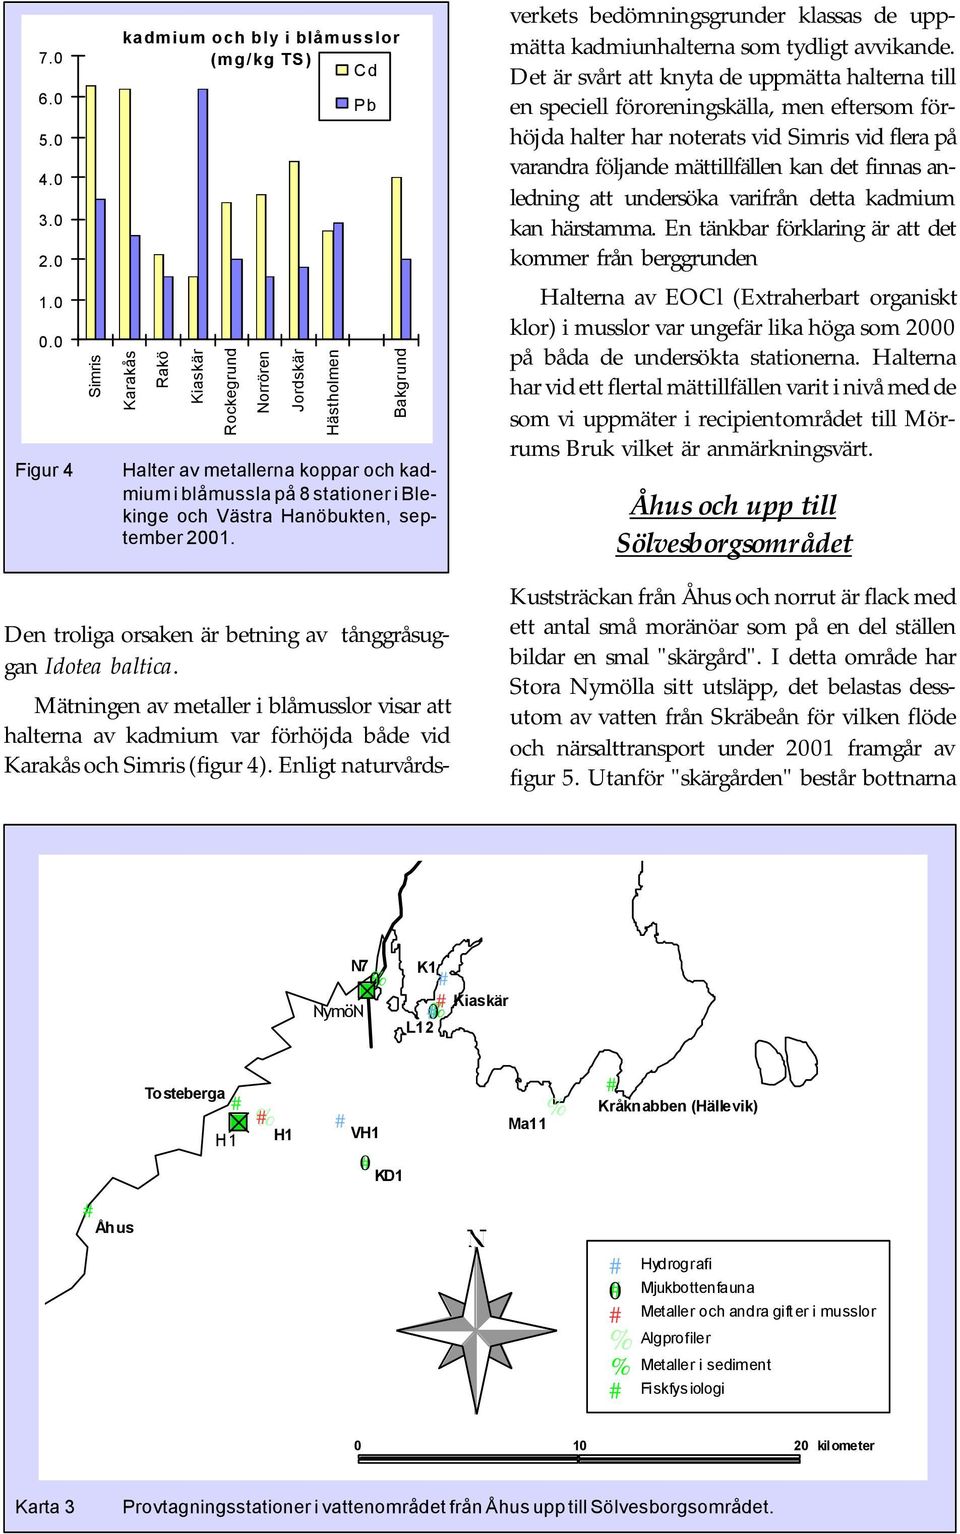 i Blekinge och Västra Hanöbukten, september 21. Mätningen av metaller i blåmusslor visar att halterna av kadmium var förhöjda både vid Karakås och Simris (figur 4).